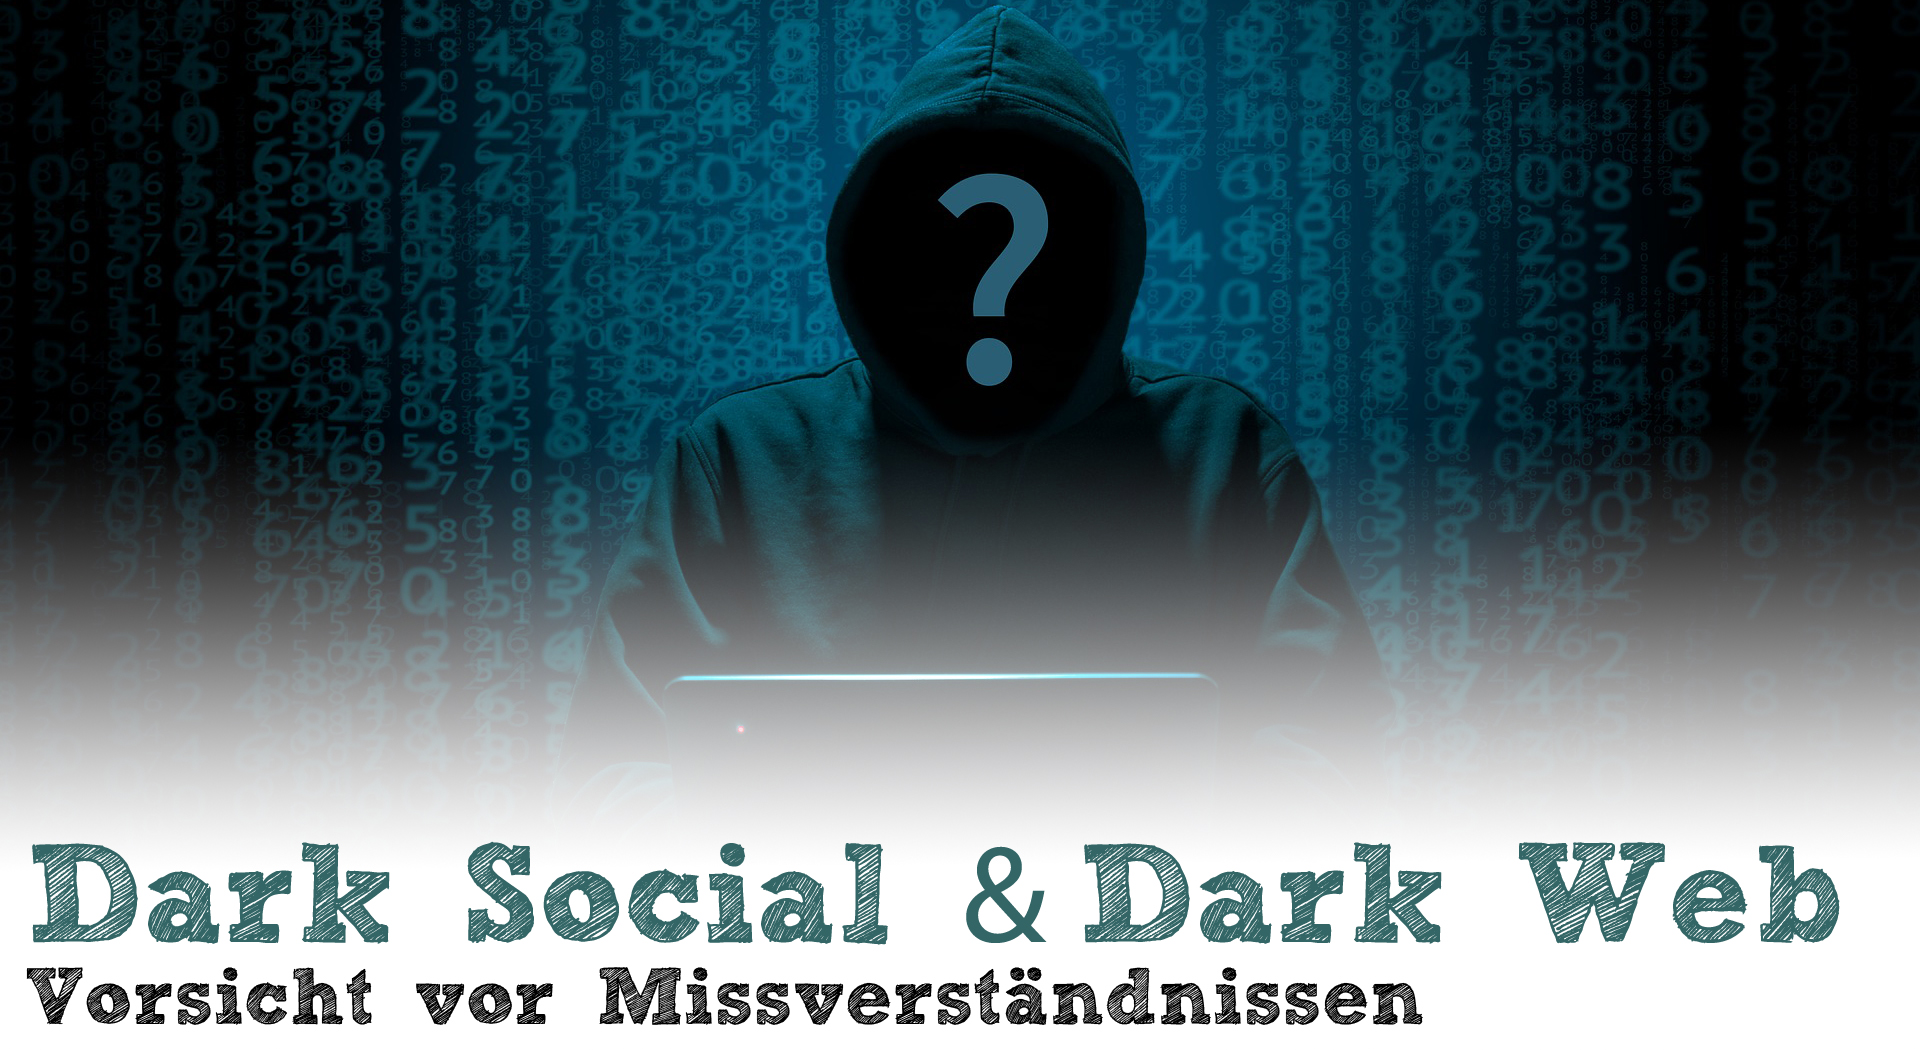 Dark Social & Dark Web - Vorsicht vor Missverständnissen - Deep Web, Dark Traffic